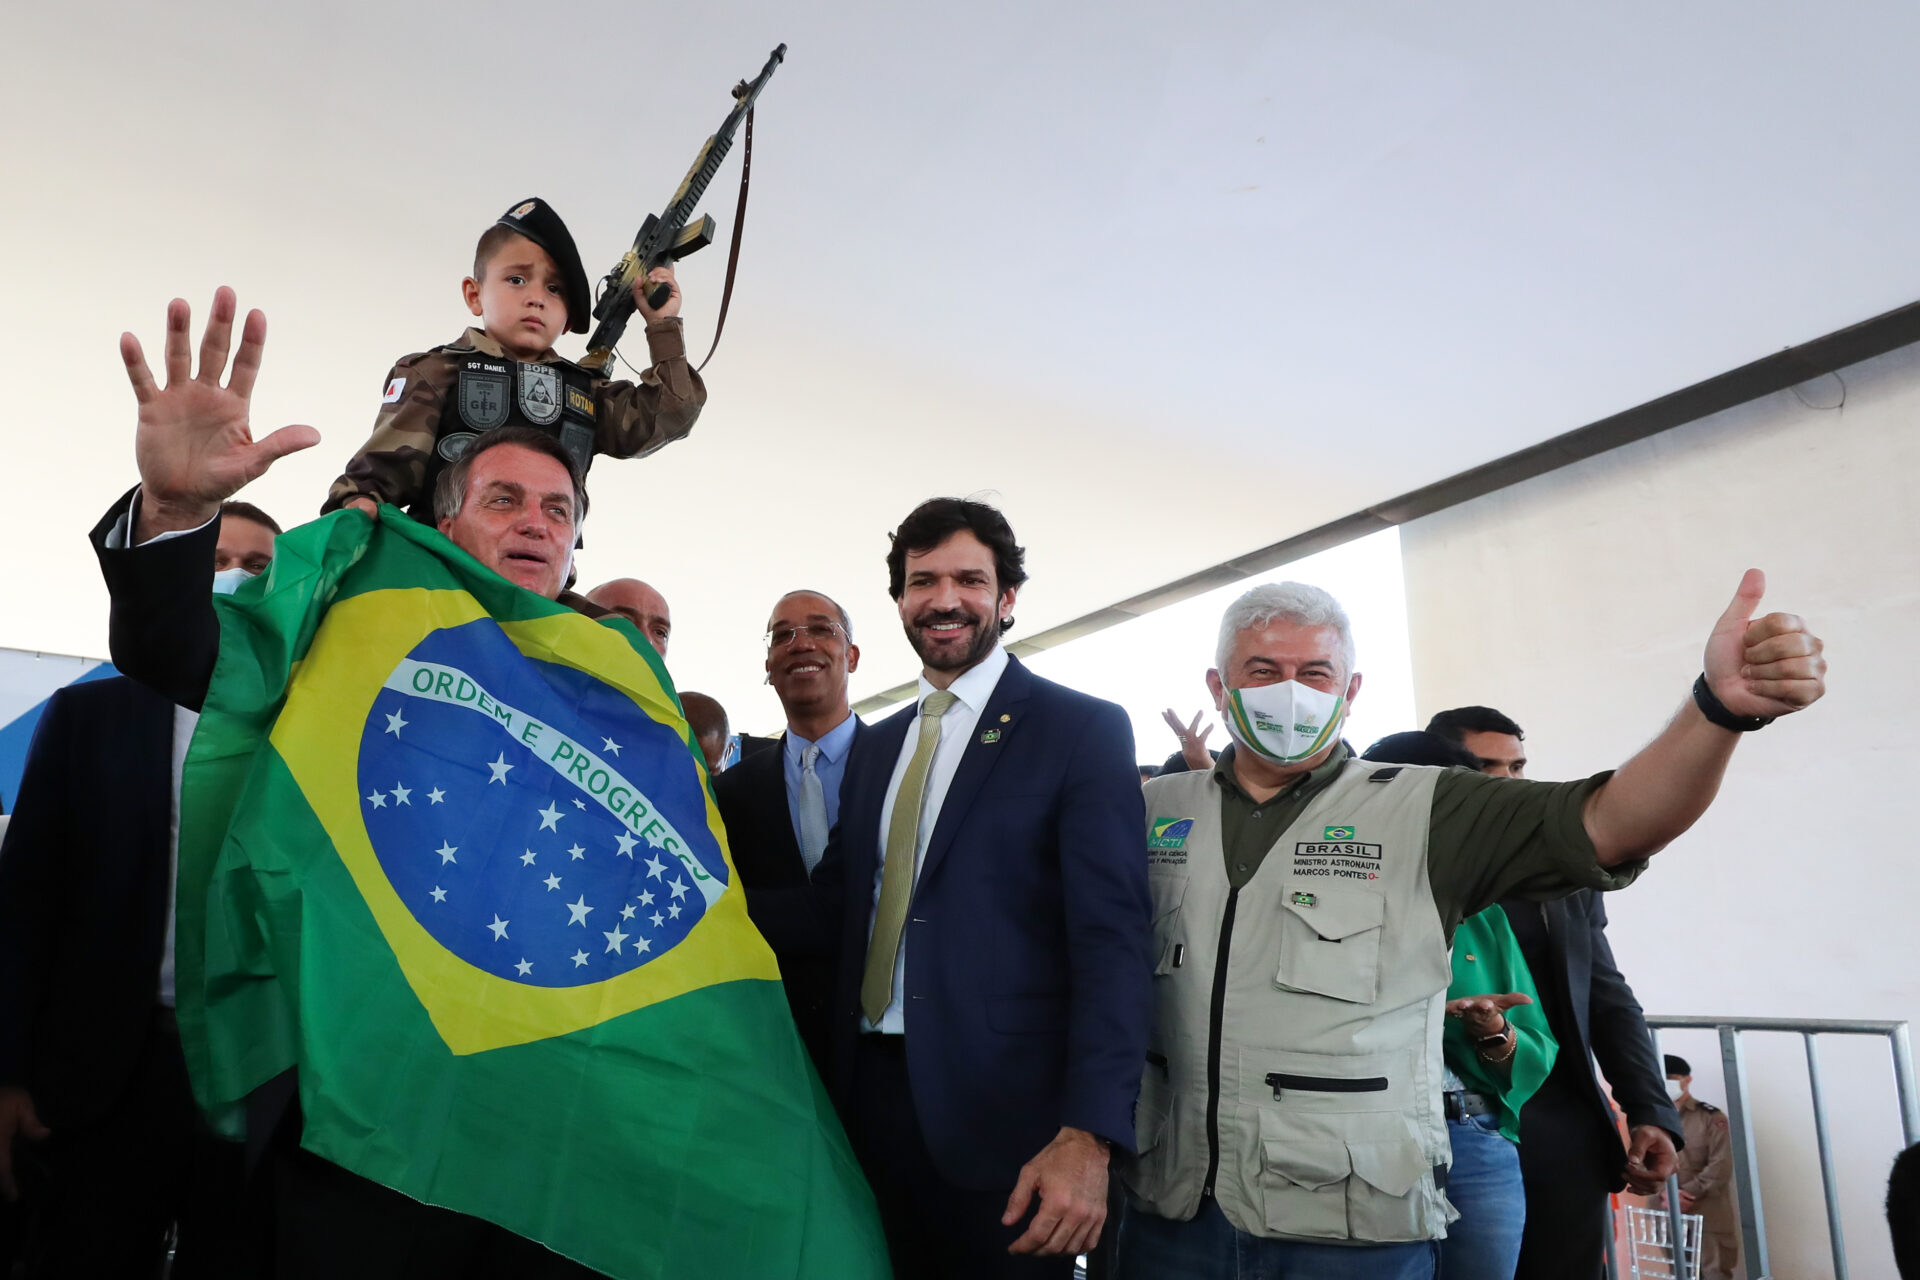 A escalada golpista, o silêncio eloquente e a omissão de Bolsonaro